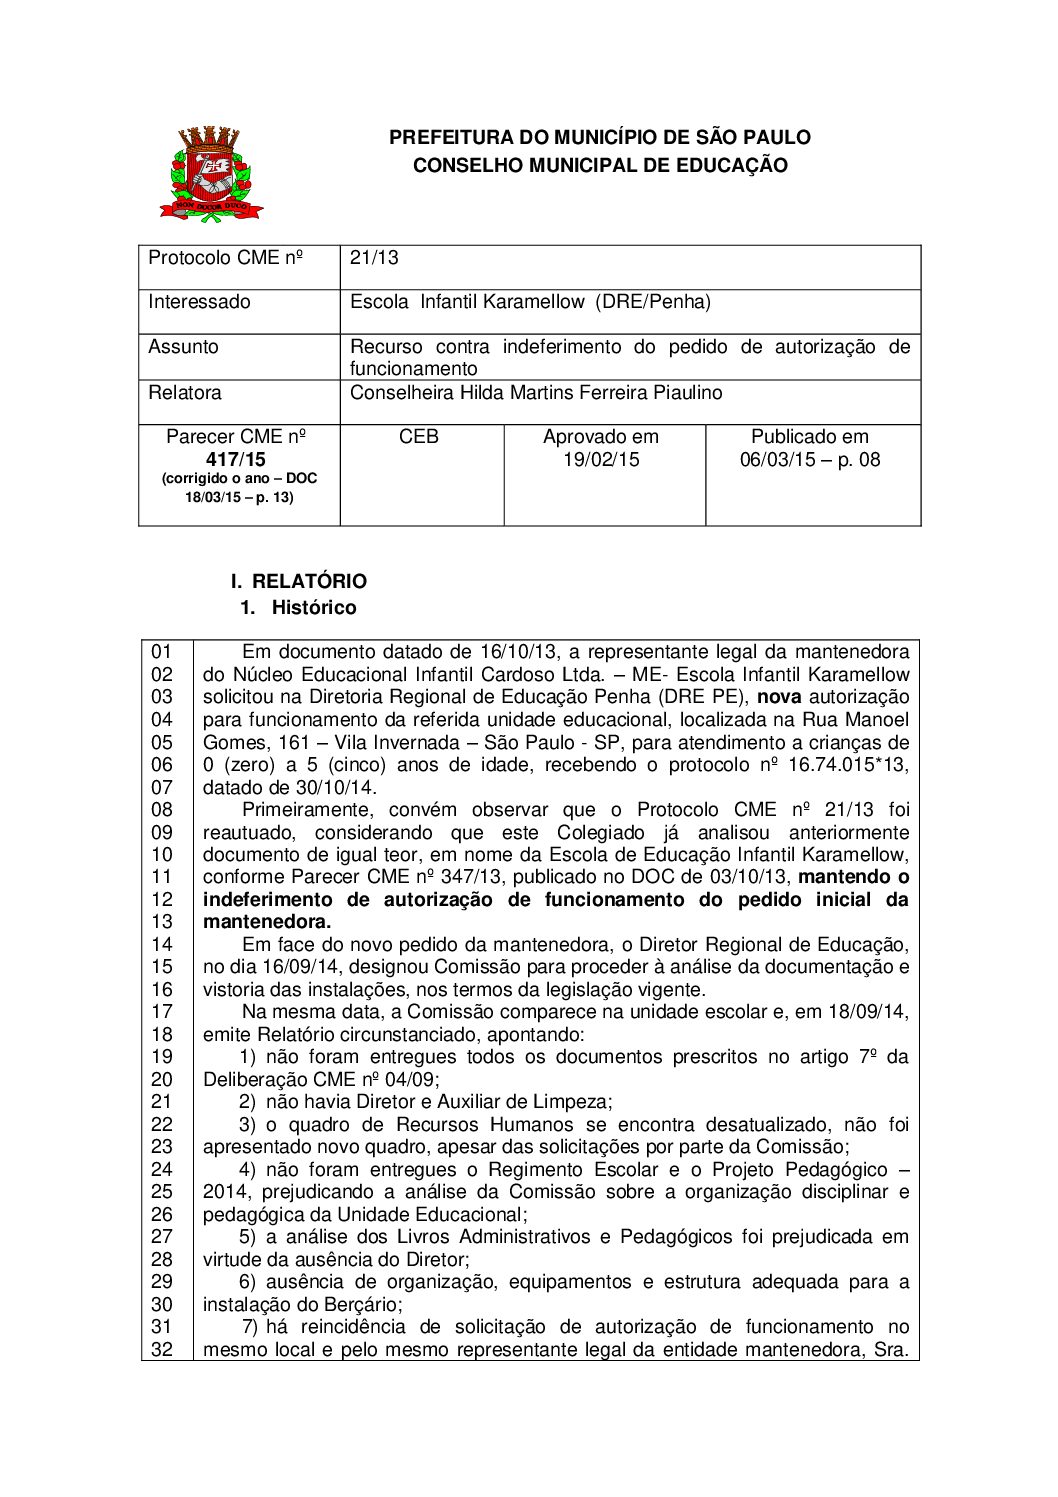 Parecer CME nº 417/2015 - Escola Infantil Karamellow (DRE/Penha) - Recurso contra indeferimento do pedido de autorização de funcionamento